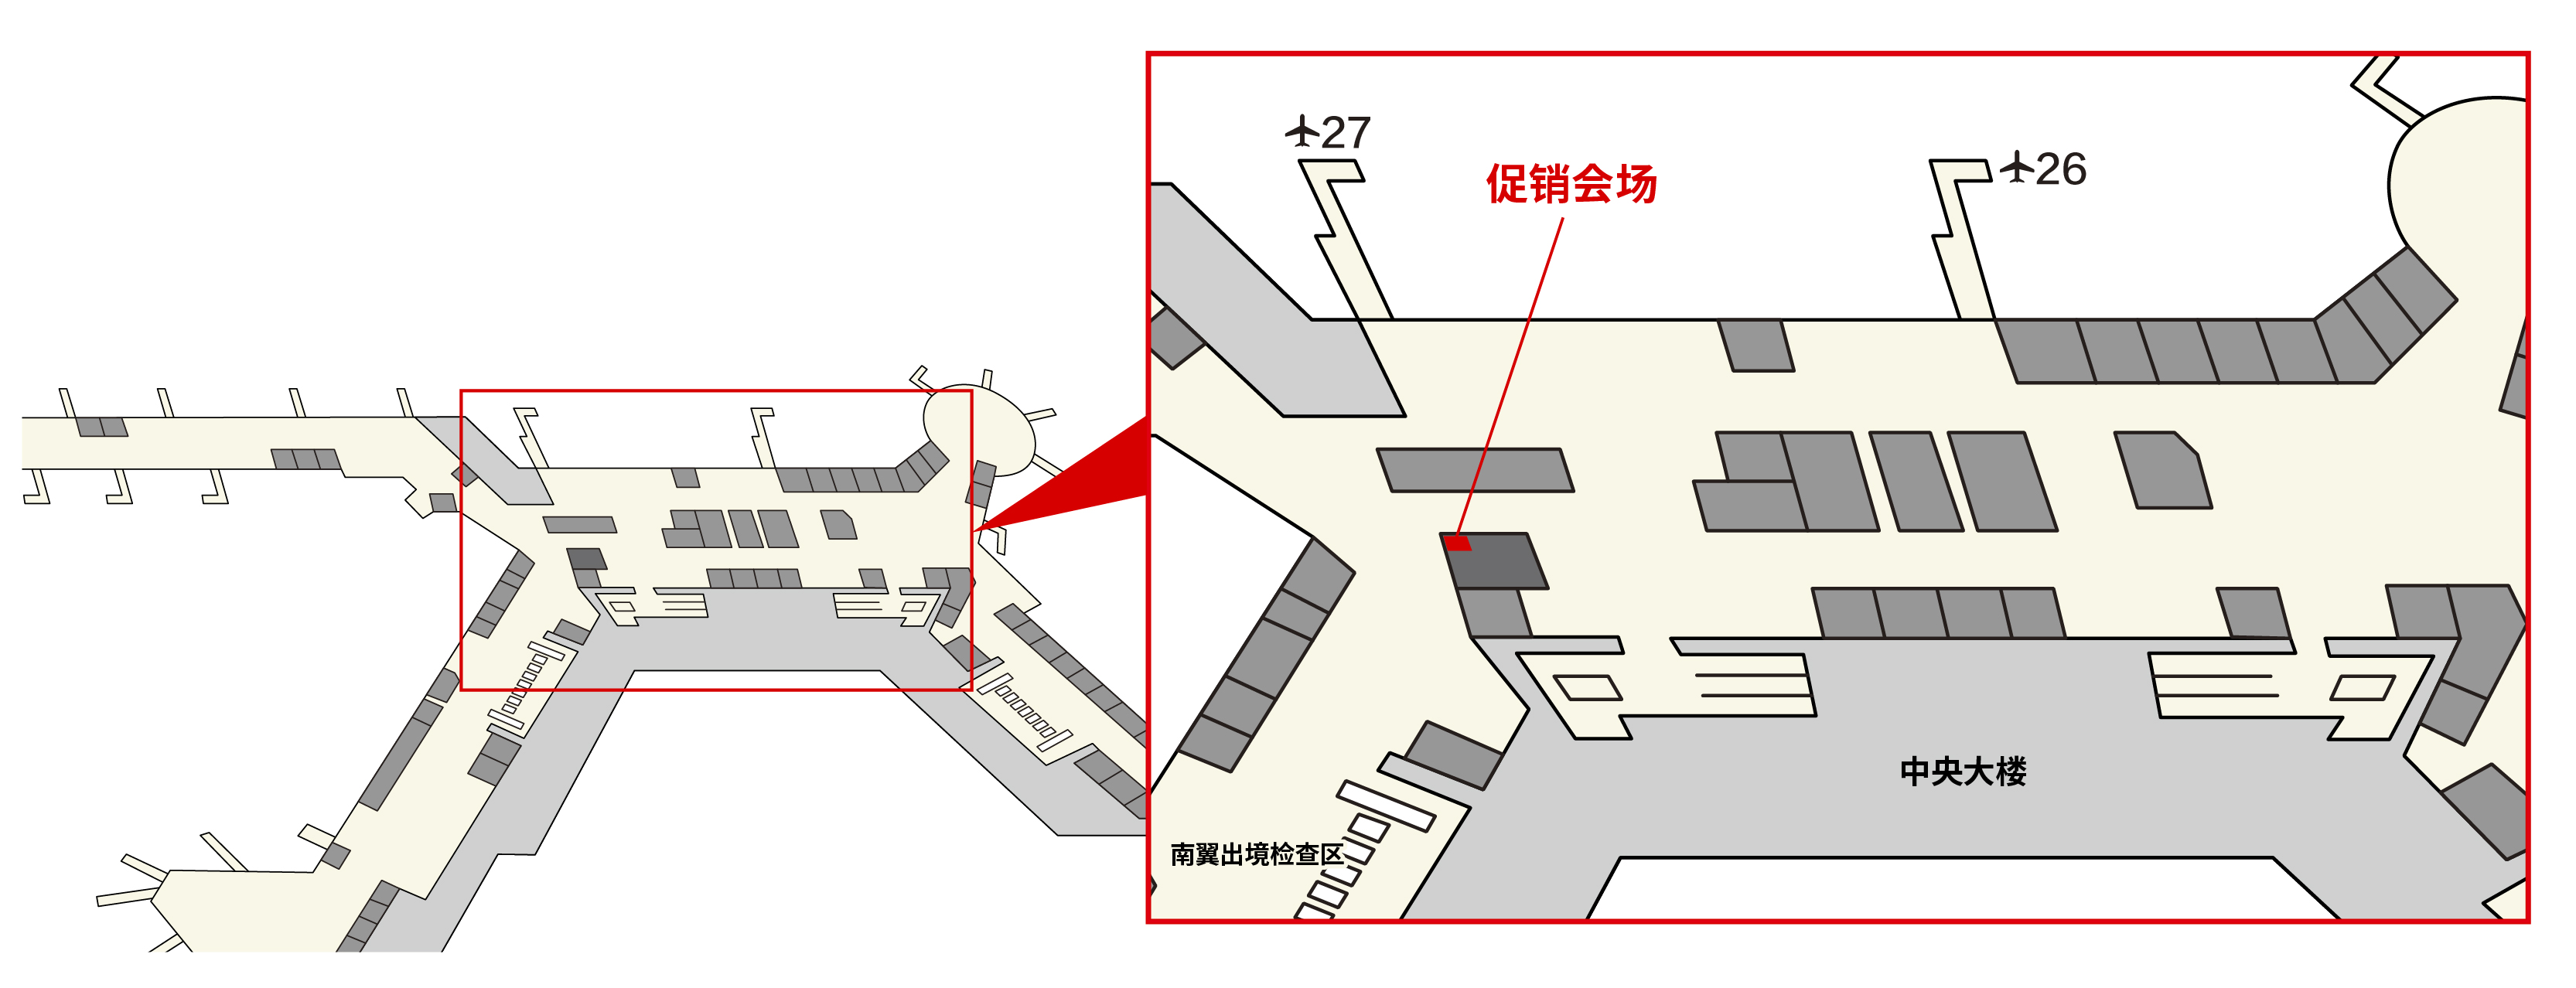 成田国际机场 第1航站楼 3楼